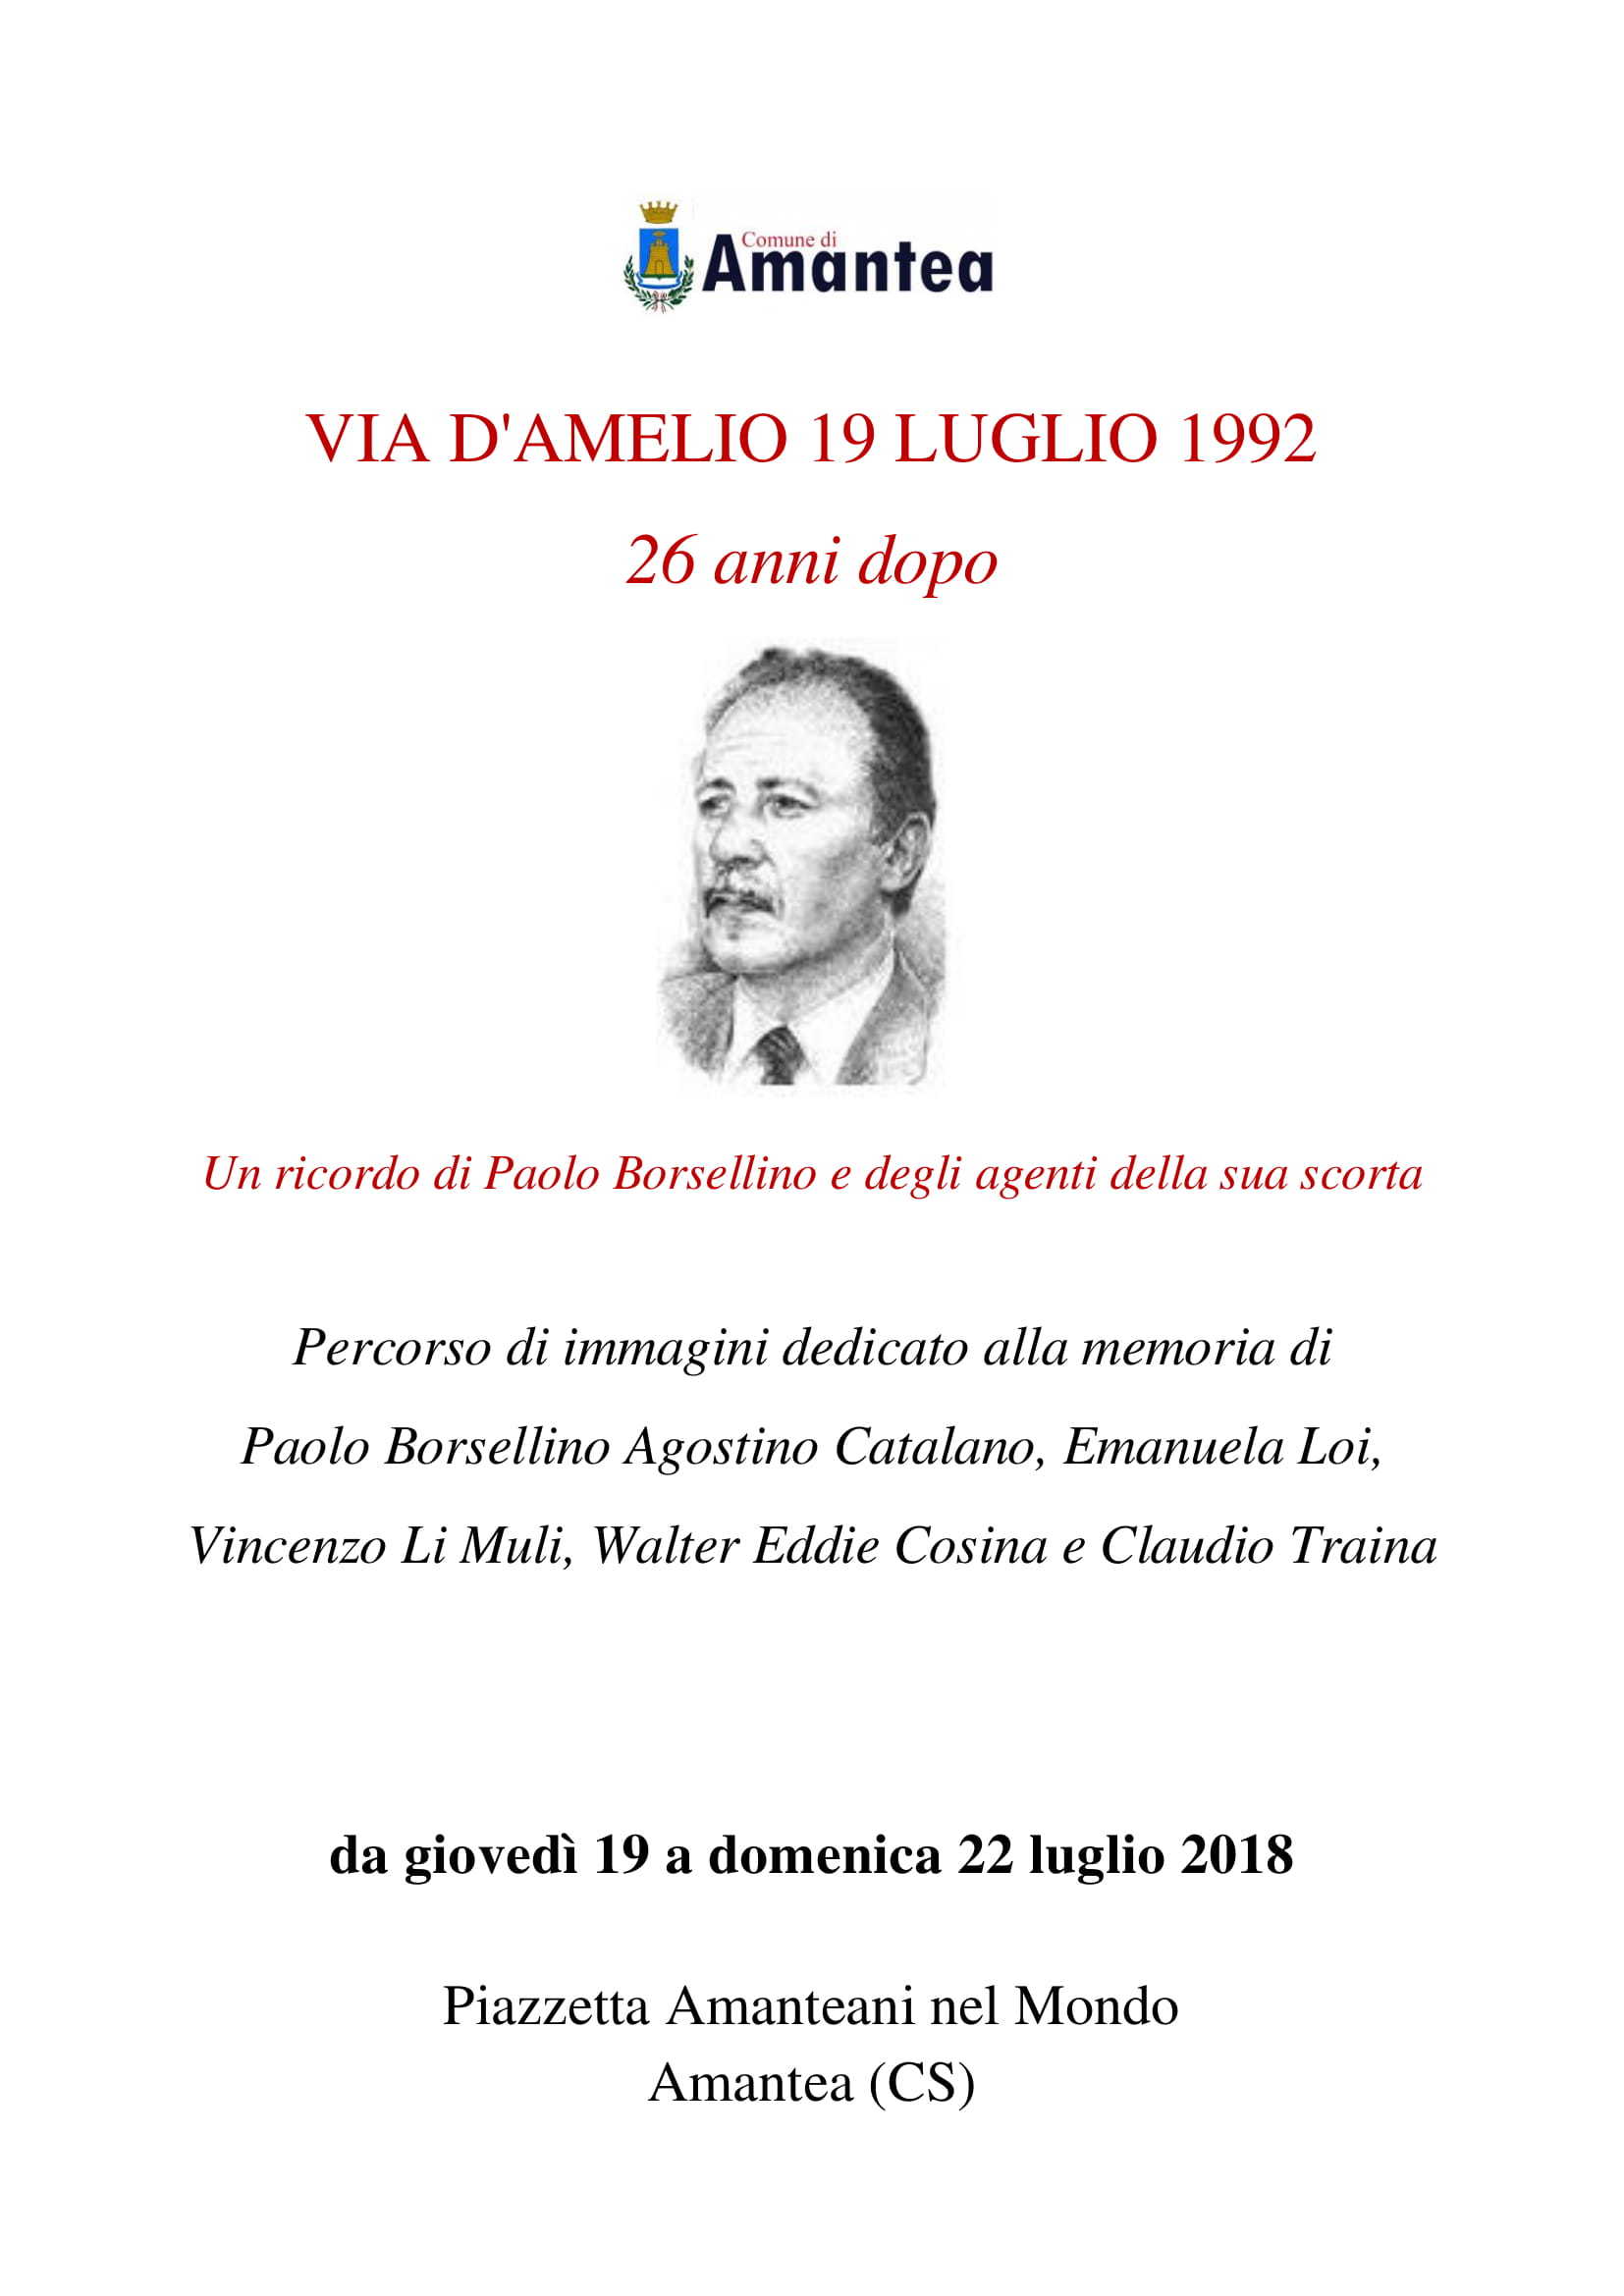 Locandina - un ricordo di Paolo Borsellino e degli agenti della scorta - 19.7.18-1